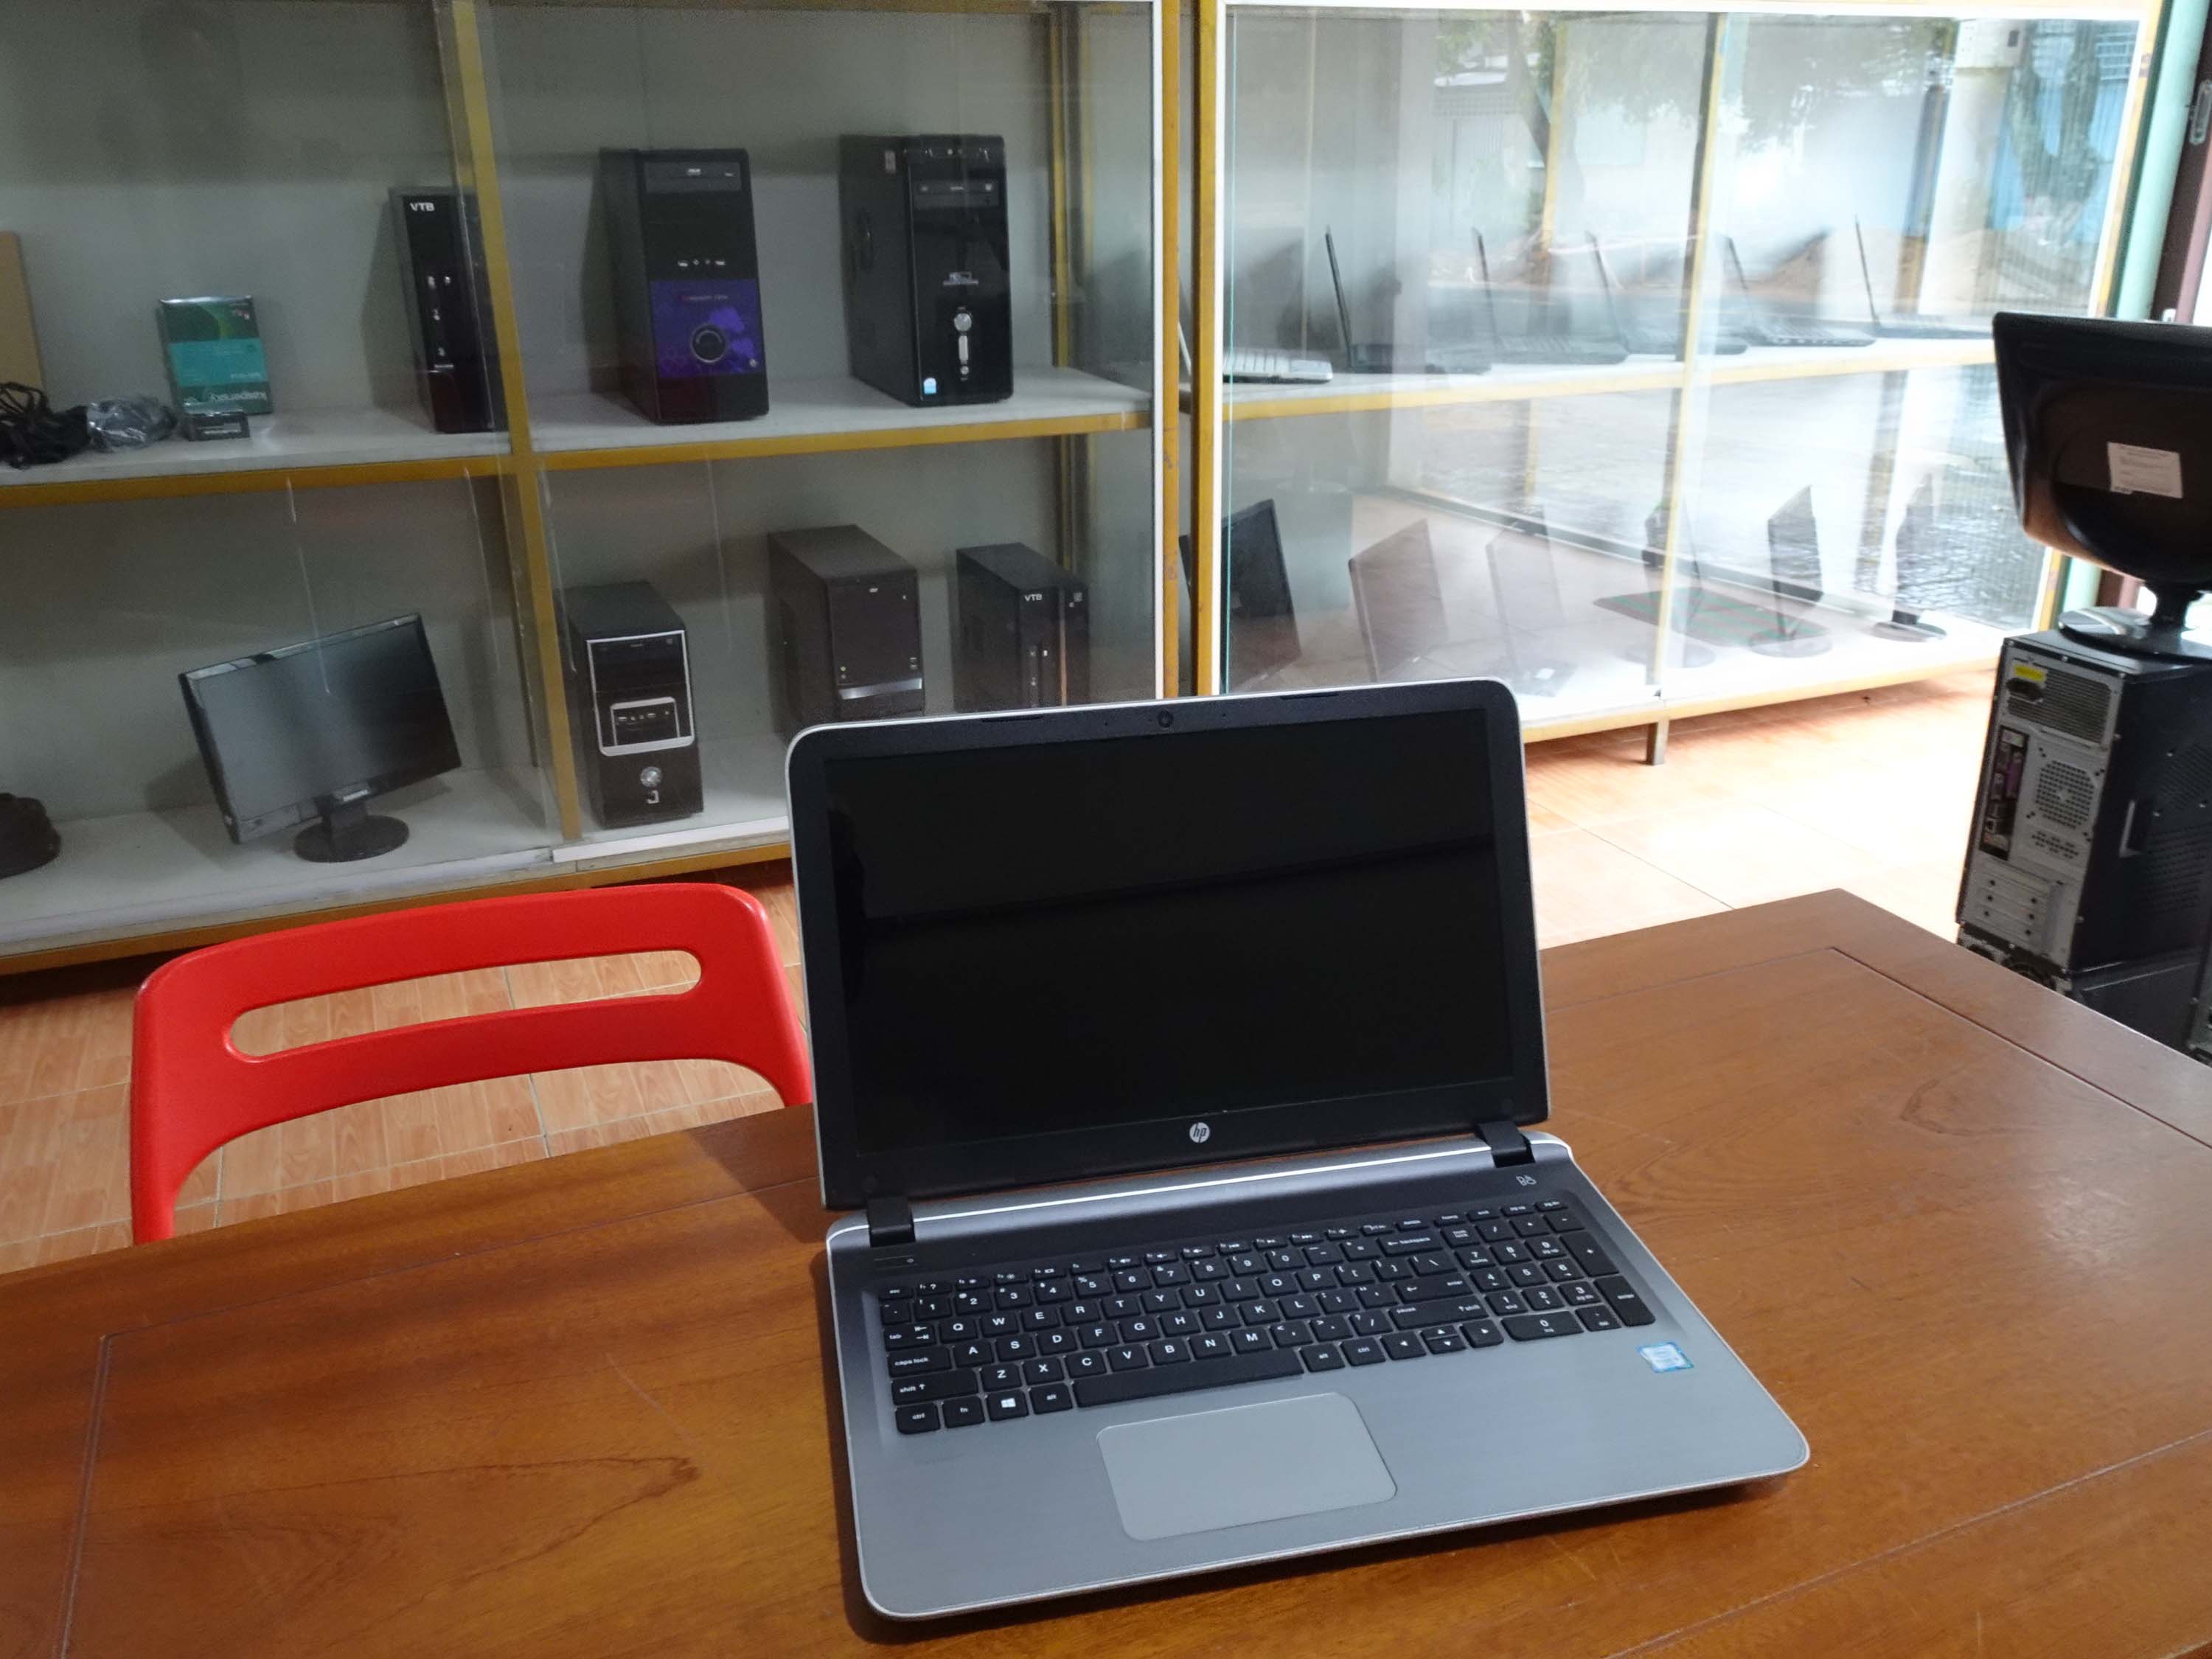 Laptop HP Pavilion notebook i5 6200U cũ chính hãng giá rẻ tại Tp Kun Tum